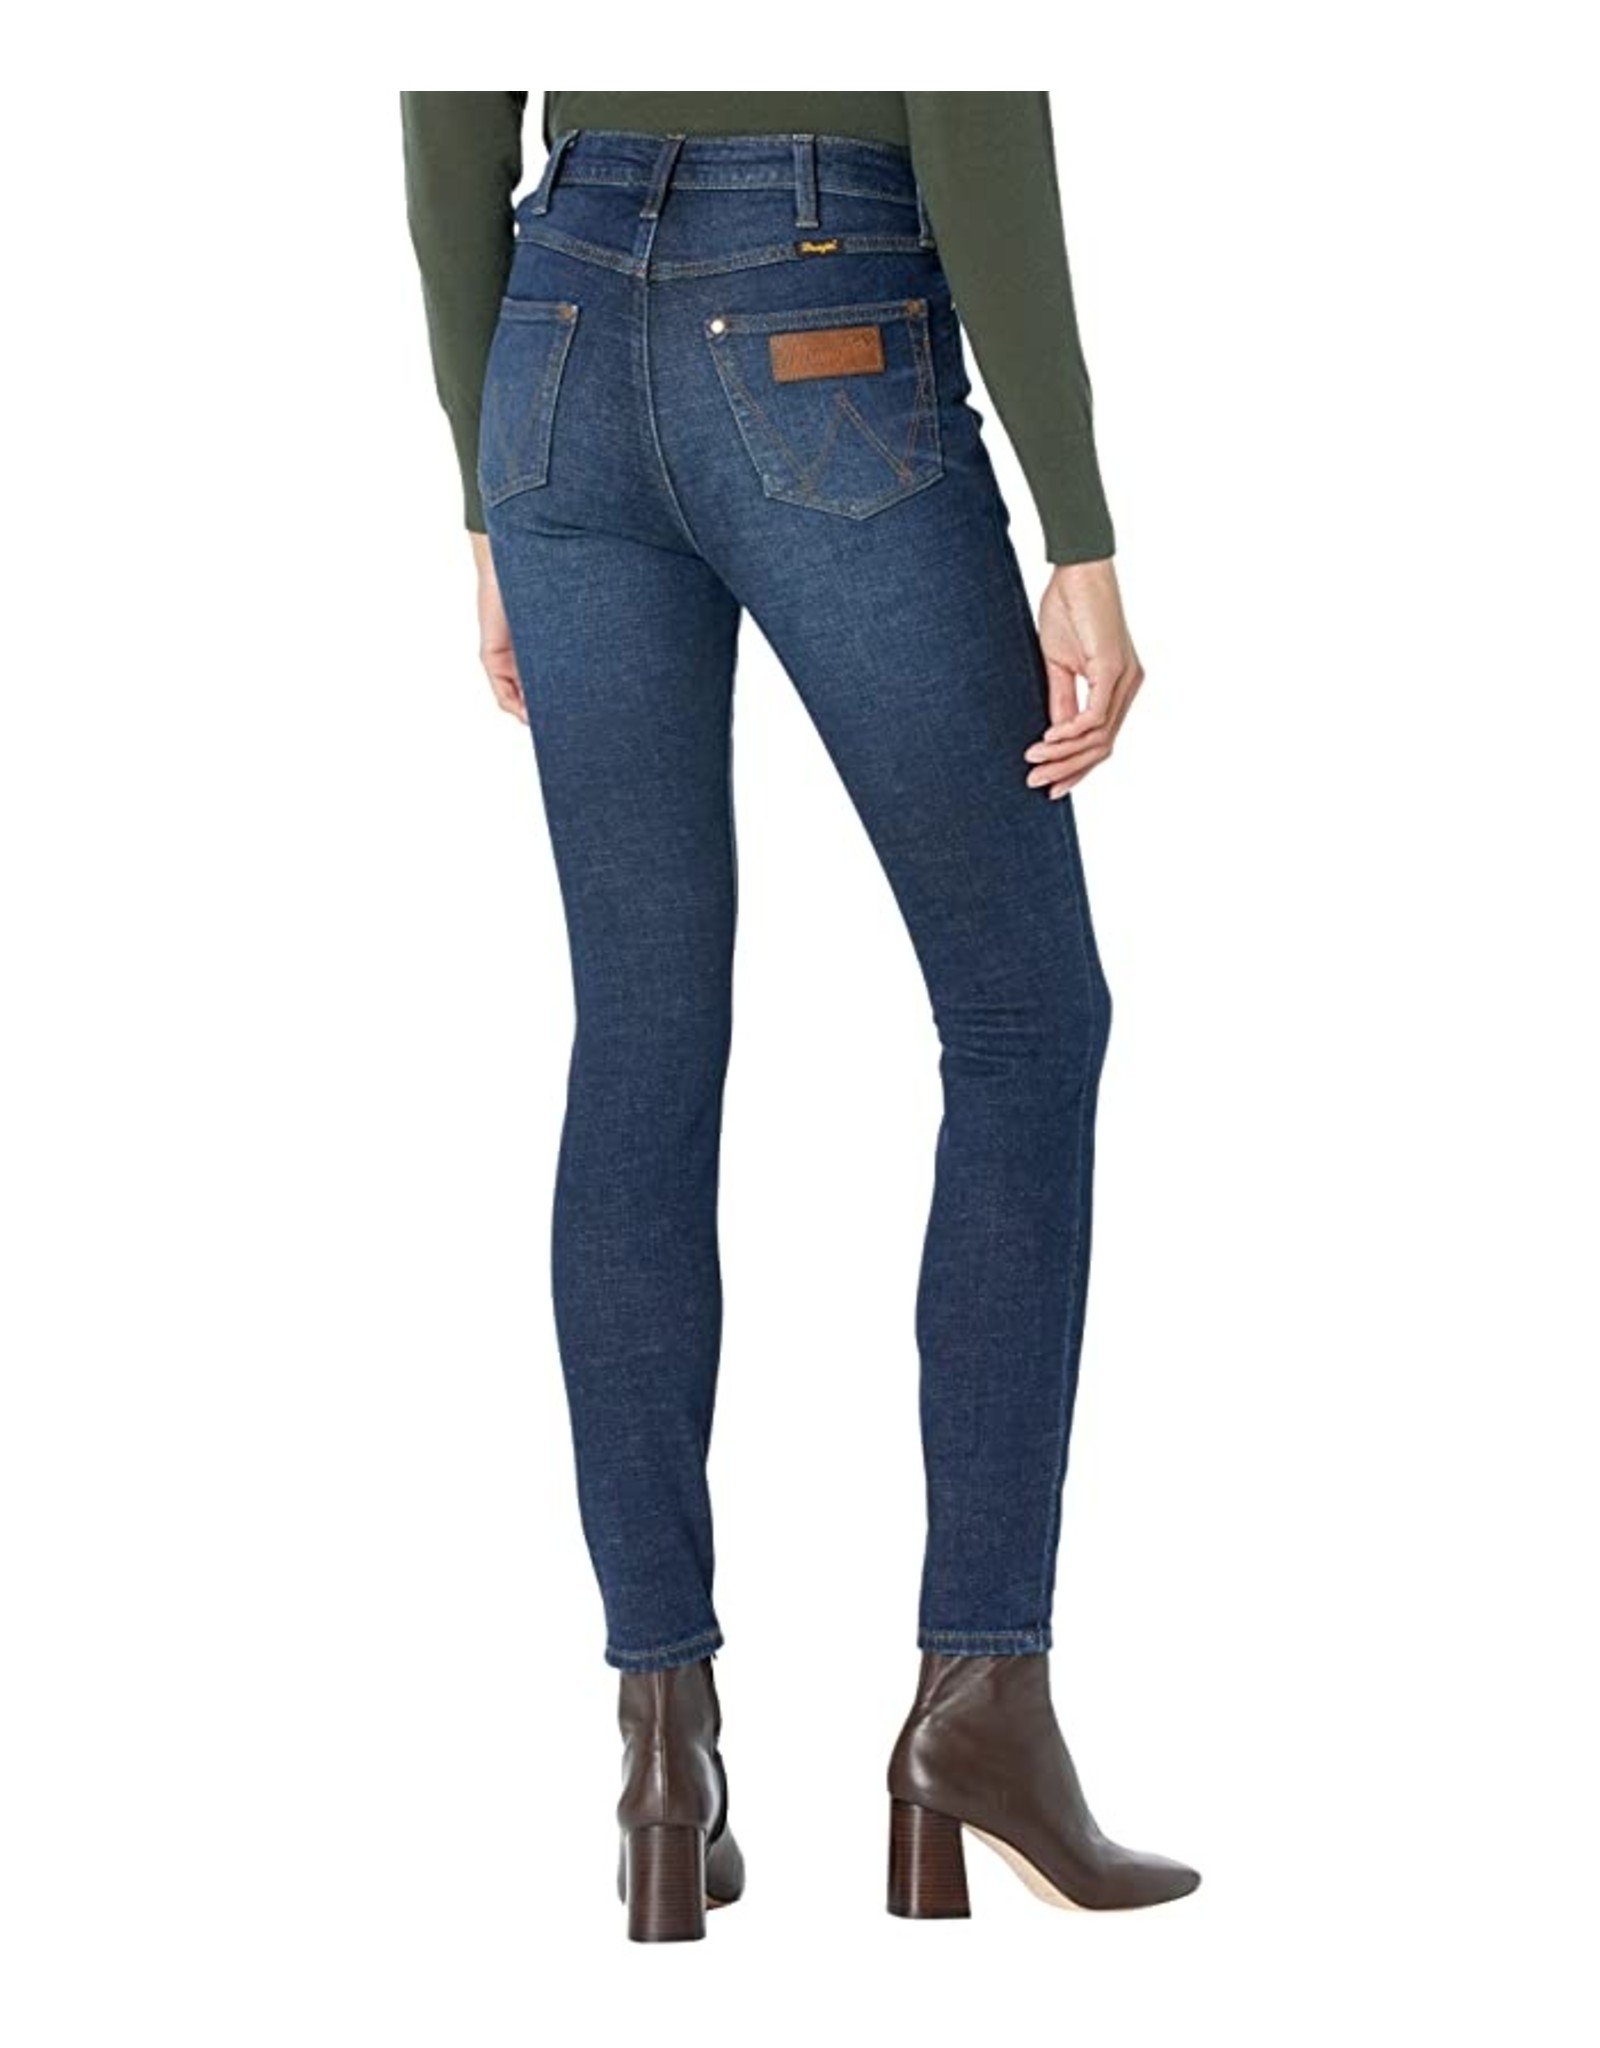 Wrangler - Women’s Retro Premium Skinny  High Rise Jean - 1011MPSDT